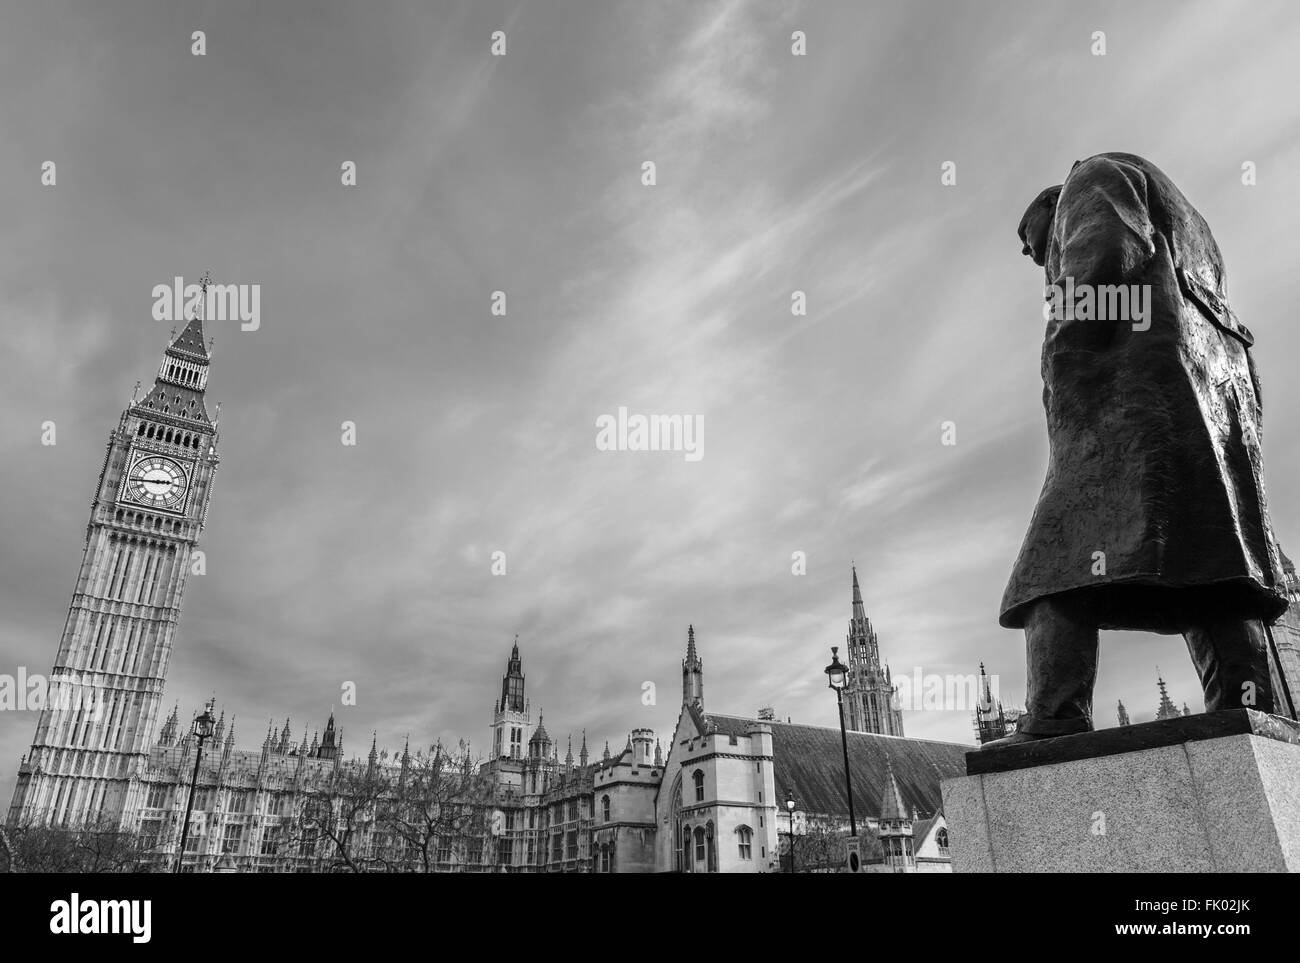 Estatua de Sir Winston Churchill con el palacio de Westminster, detrás de la Plaza del Parlamento, Westminster, Londres, Inglaterra, Reino Unido. Foto de stock